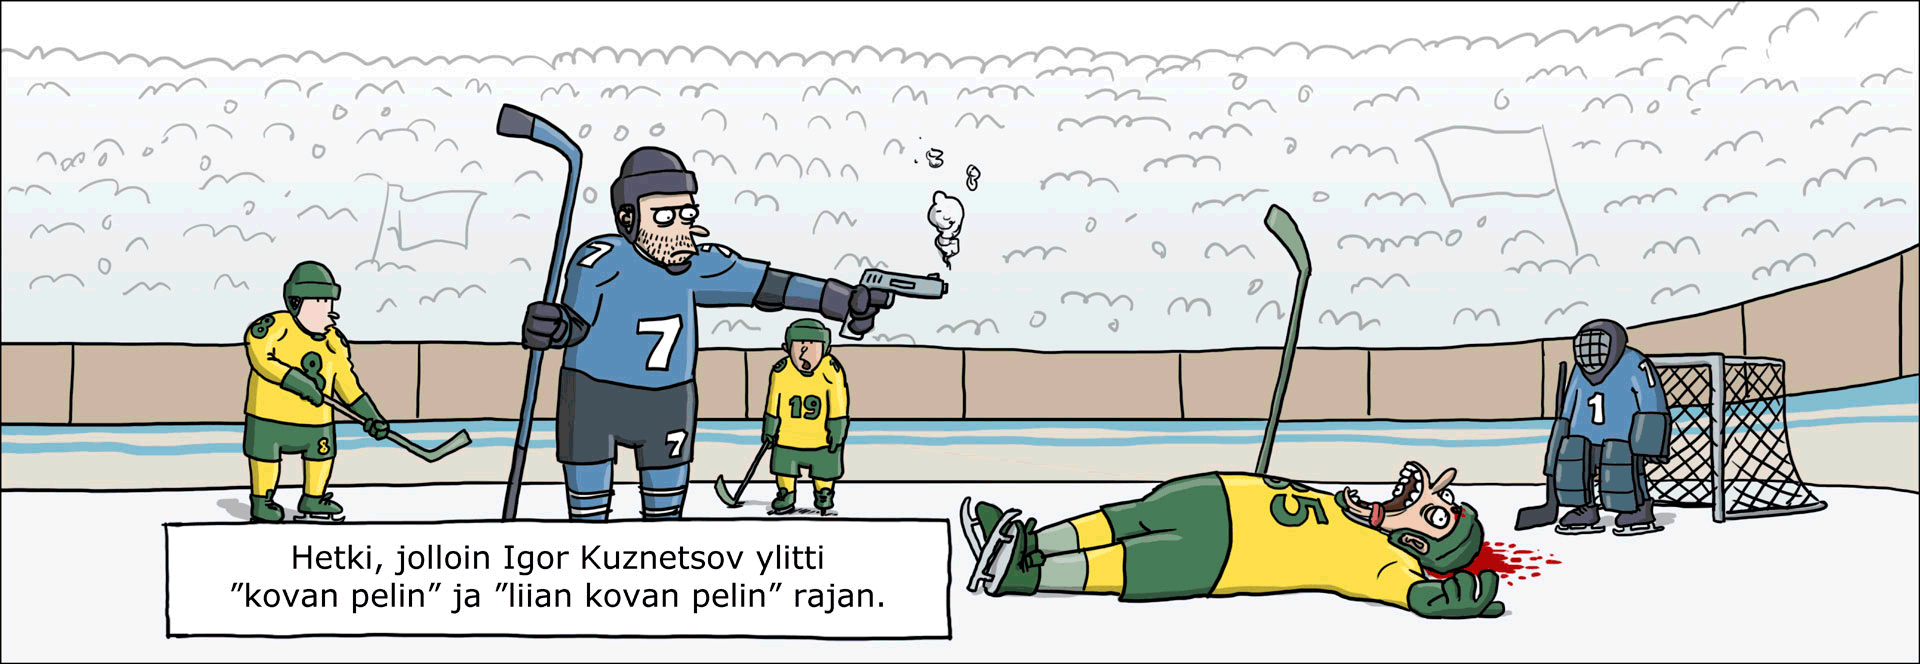 Карикатура на хоккейных защитников